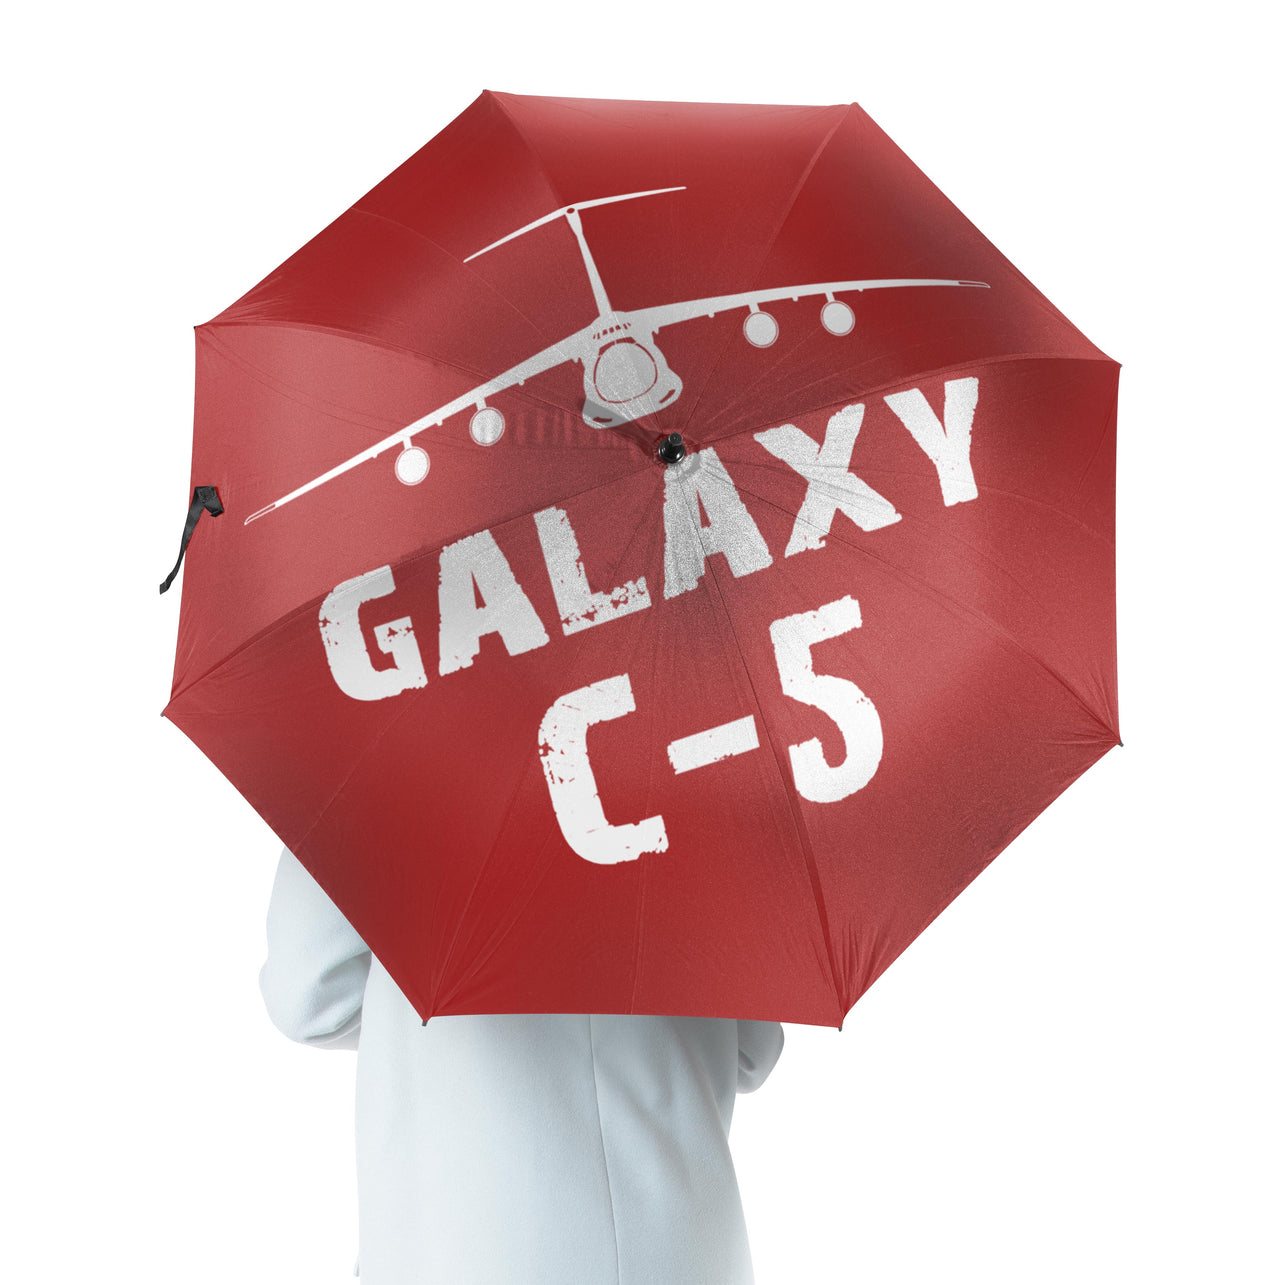 Galaxy C-5 & Plane Designed Umbrella